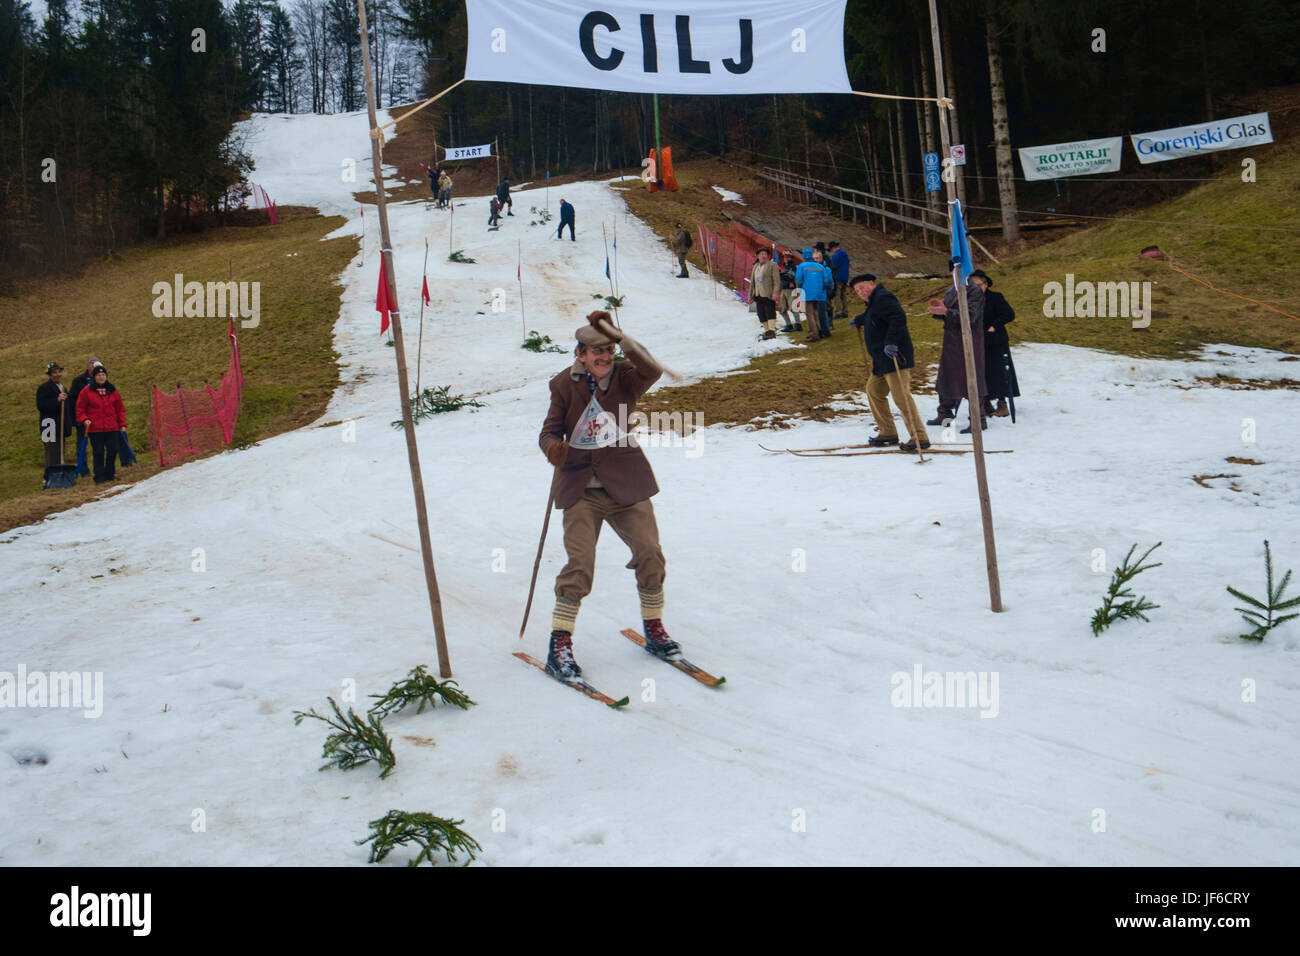 Skifahrer im klassischen Retro-Stil-Kostüme, mit alten hölzernen Ski-Ausrüstung  beim jährlichen Ski-Wettbewerb Stockfotografie - Alamy